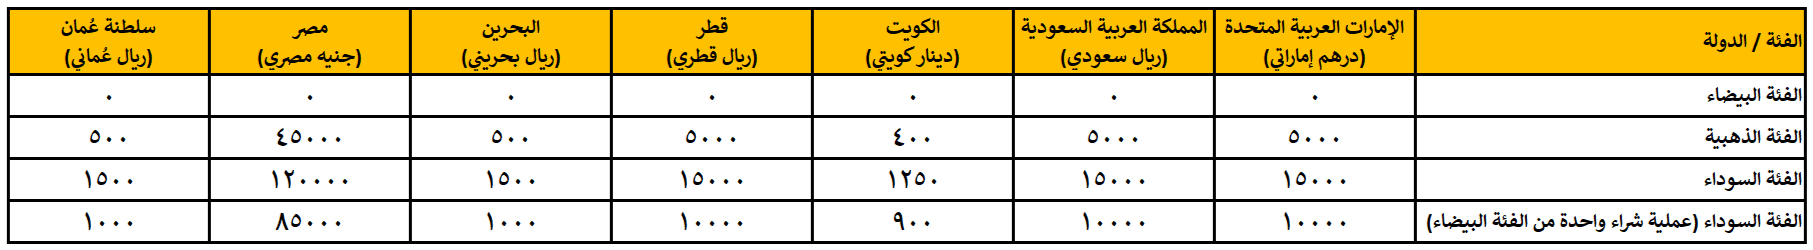 Points Thresholds Arabic